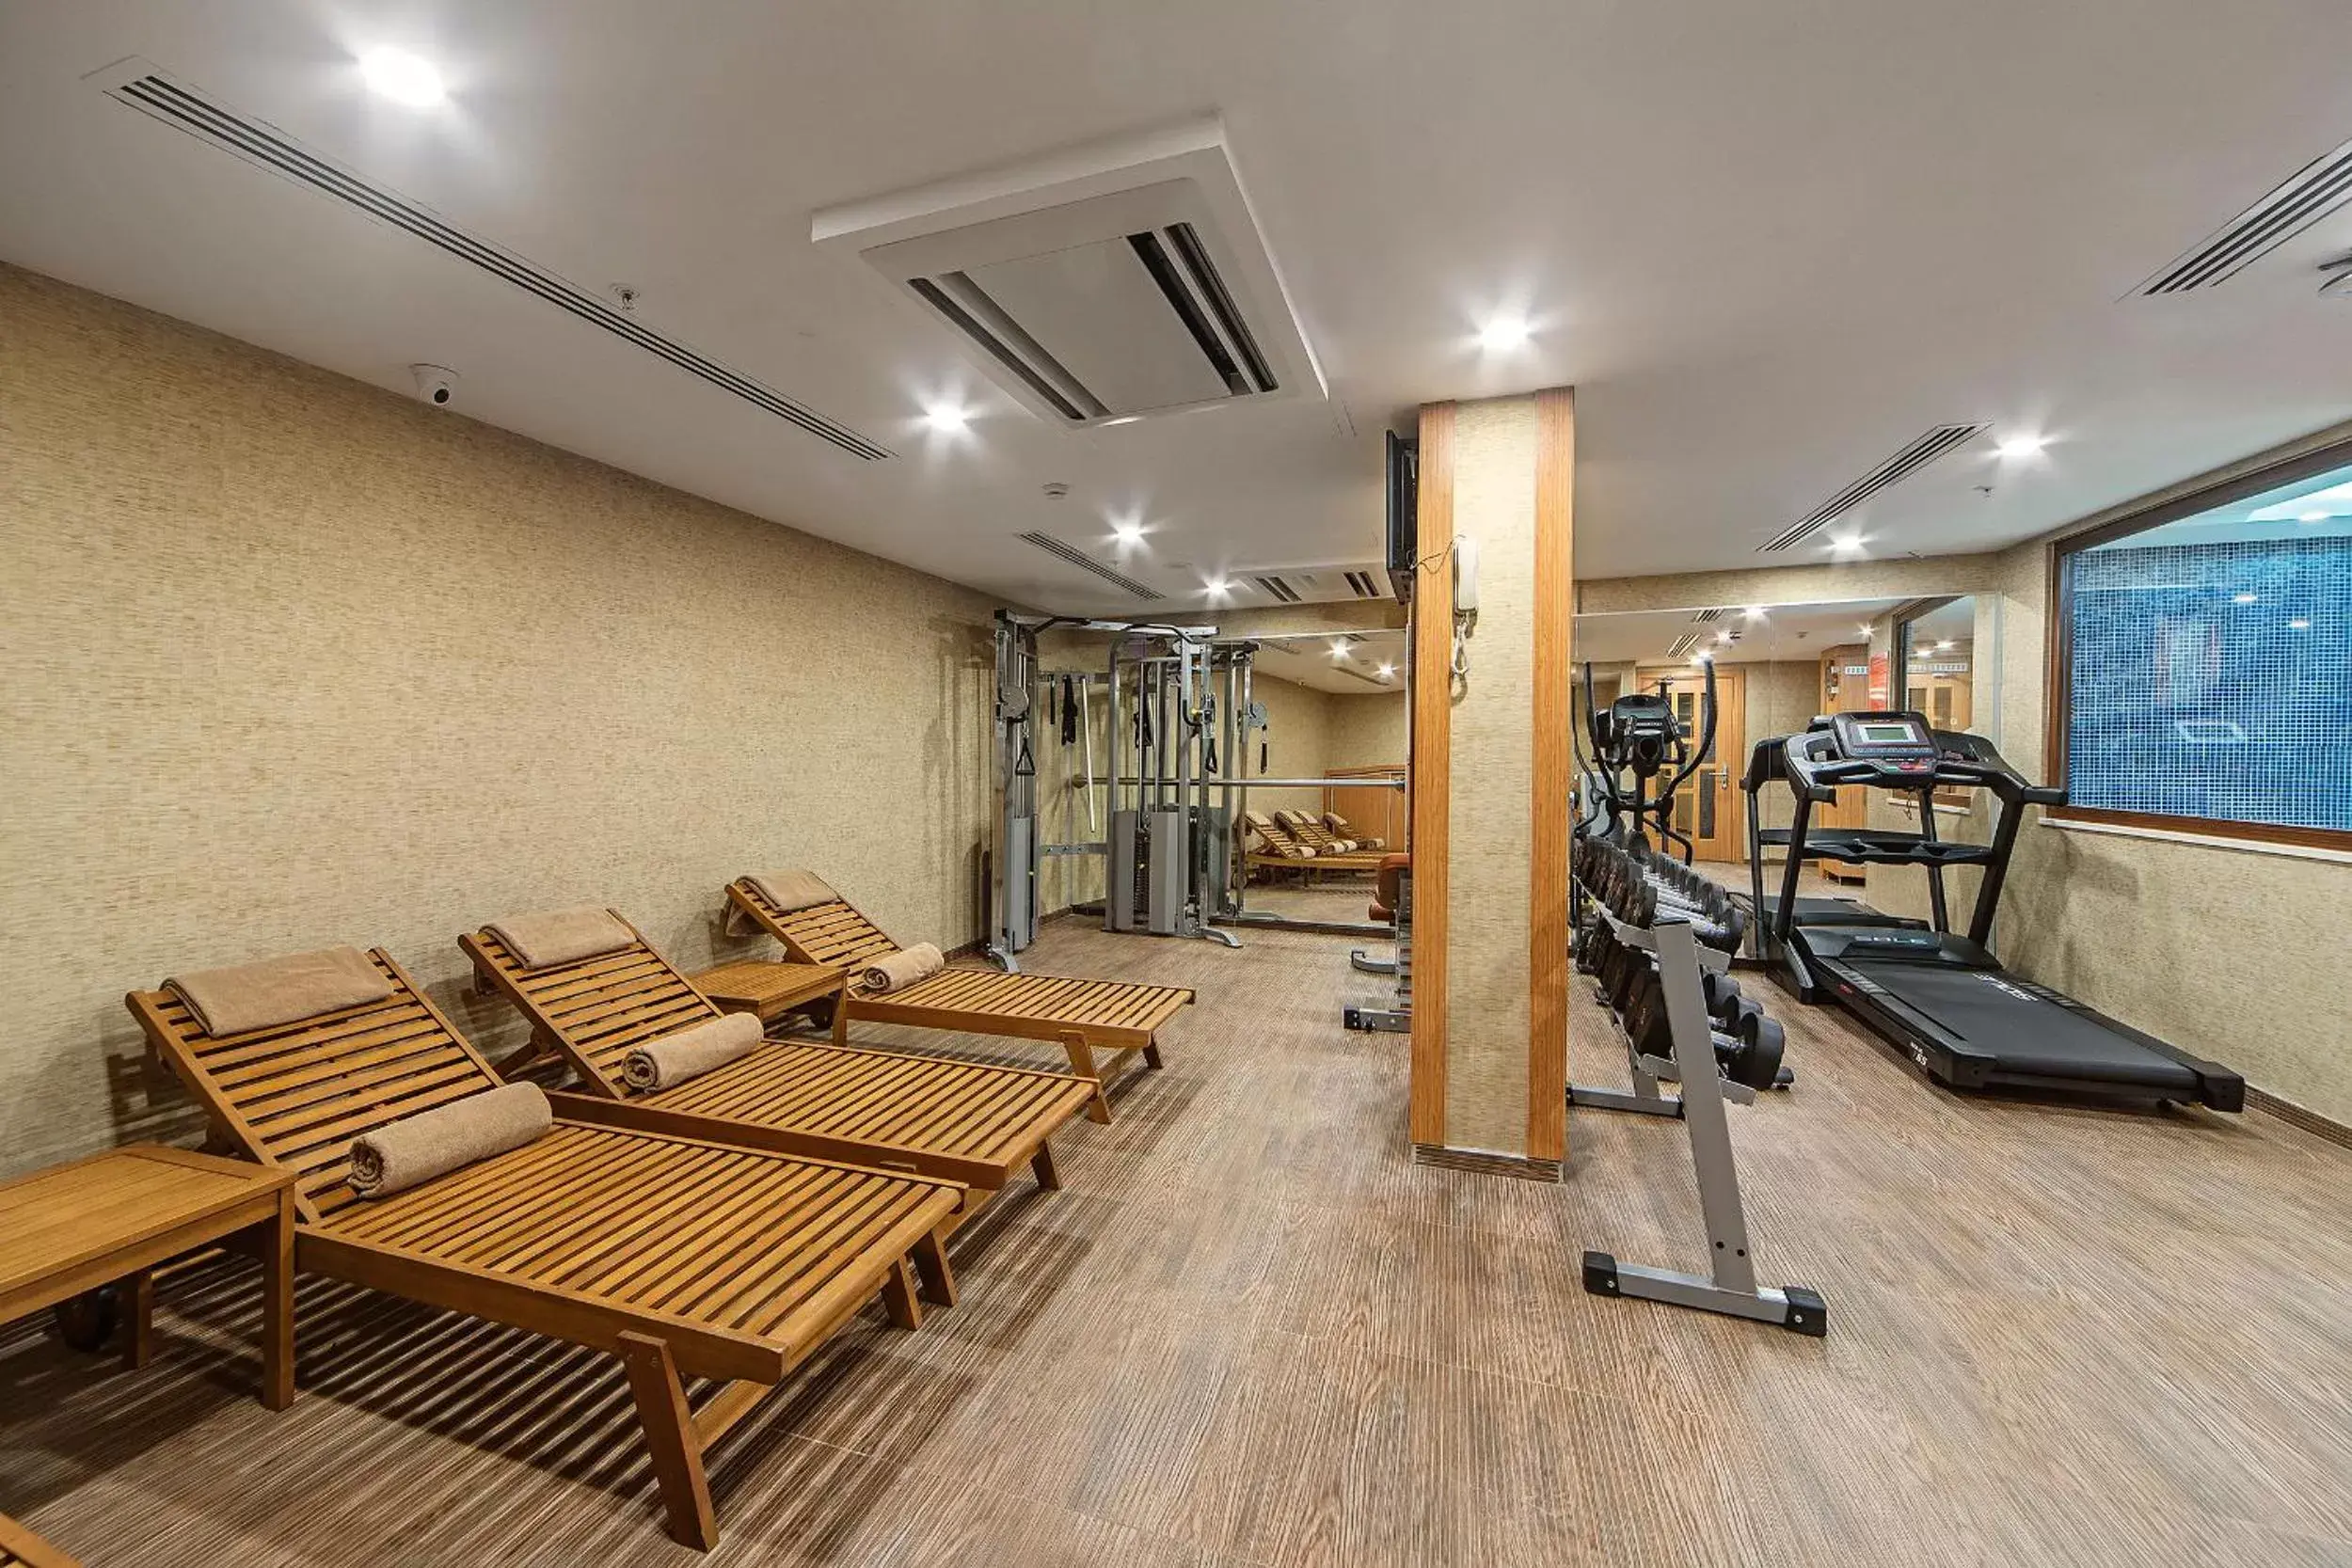 Fitness centre/facilities, Fitness Center/Facilities in Mukarnas Taksim Hotel